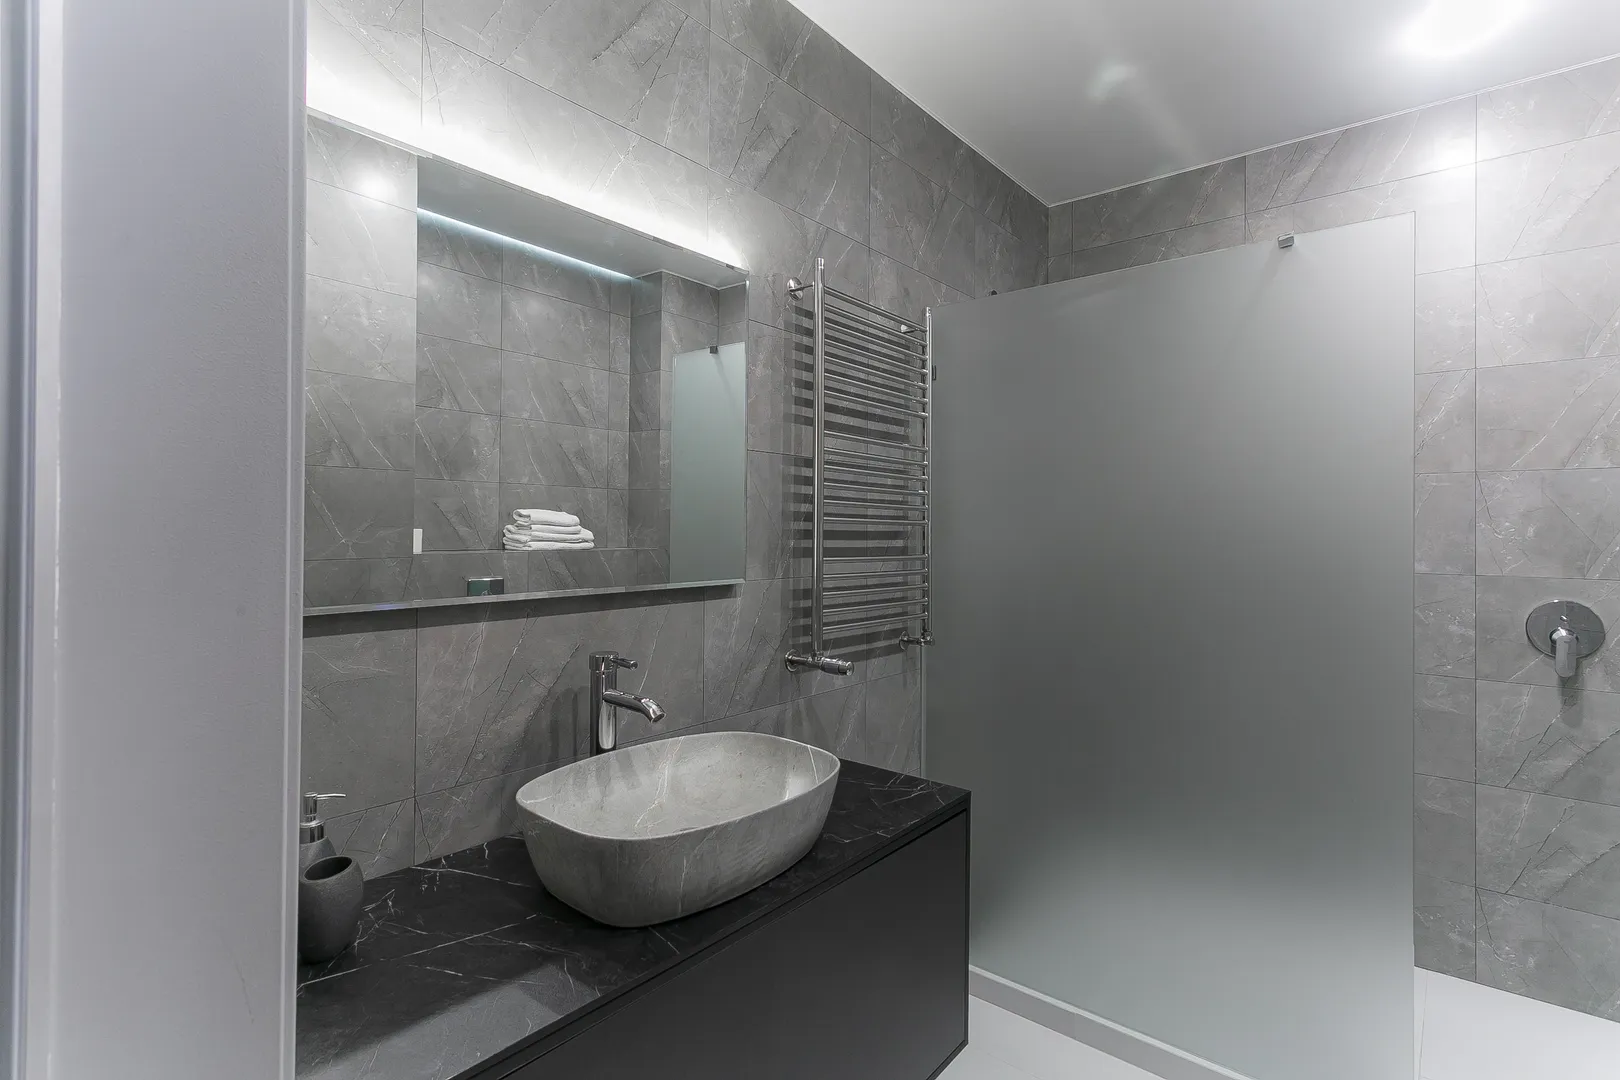 Ванная комната оборудована встроенным унитазом, гигиеническим душем, раковиной, тумбой с выдвижными ящиками, просторным душем, полотенцесушителем, зеркалом с подсветкой